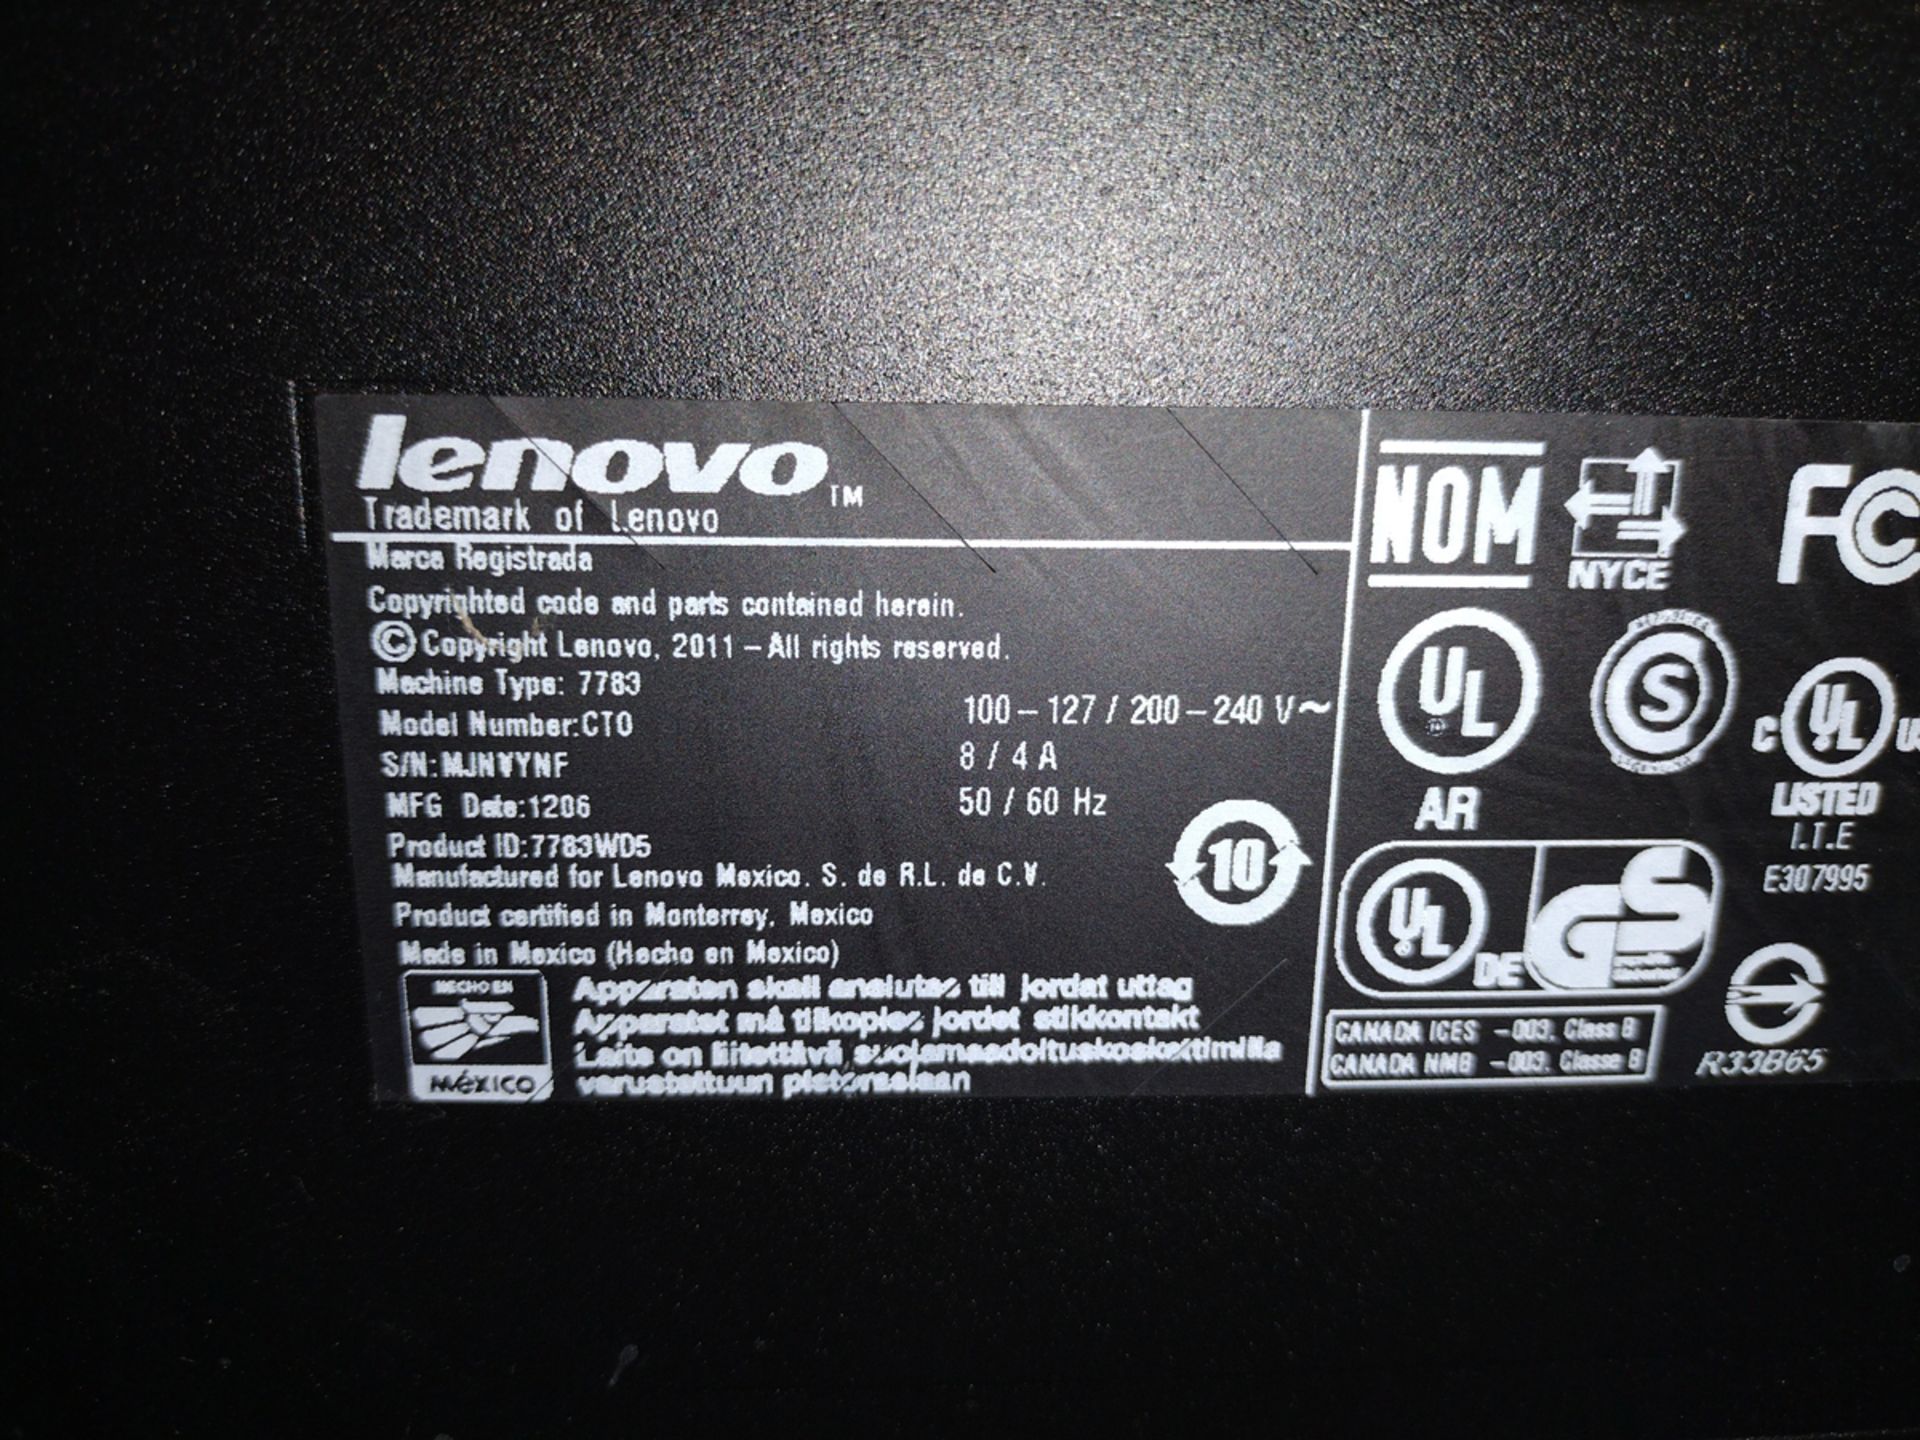 Lenovo E30 ThinkStation i7 PC w/ Monitor and Keyboard - Image 2 of 2